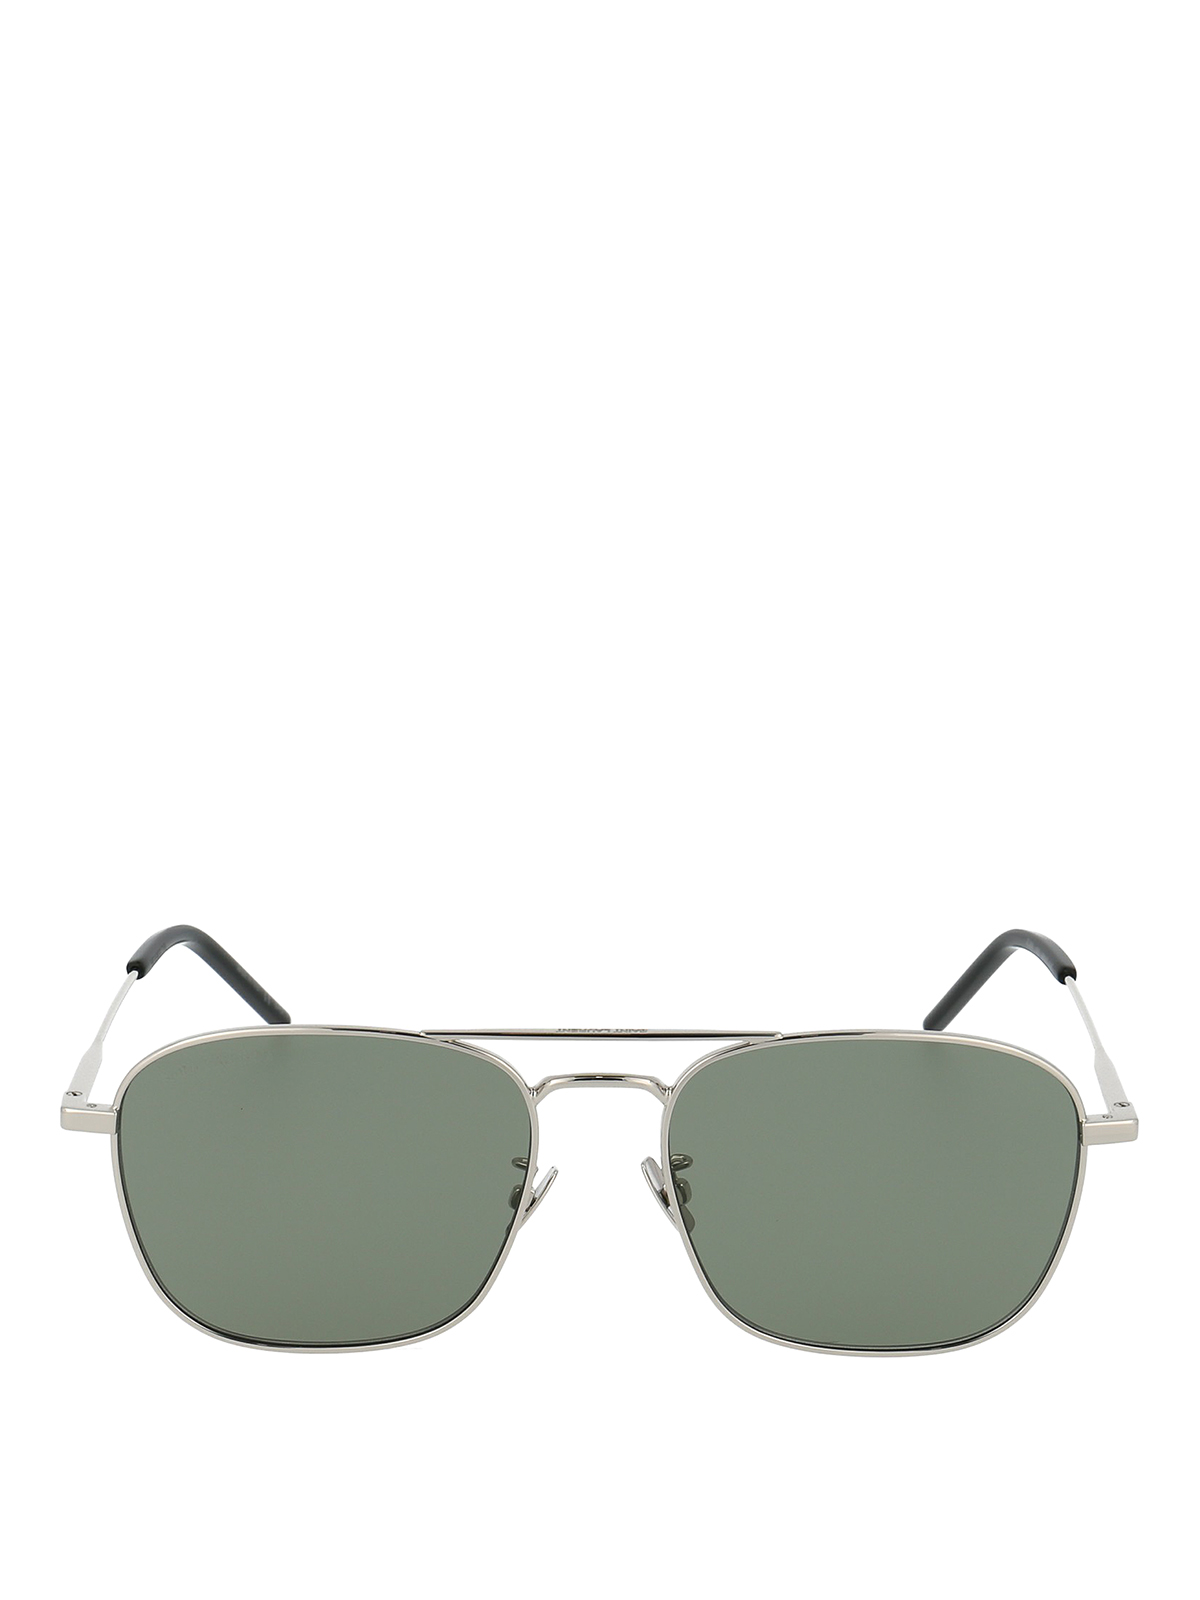 Sunglasses Saint Laurent - SL 309 green sunglasses - SL309003 | iKRIX.com